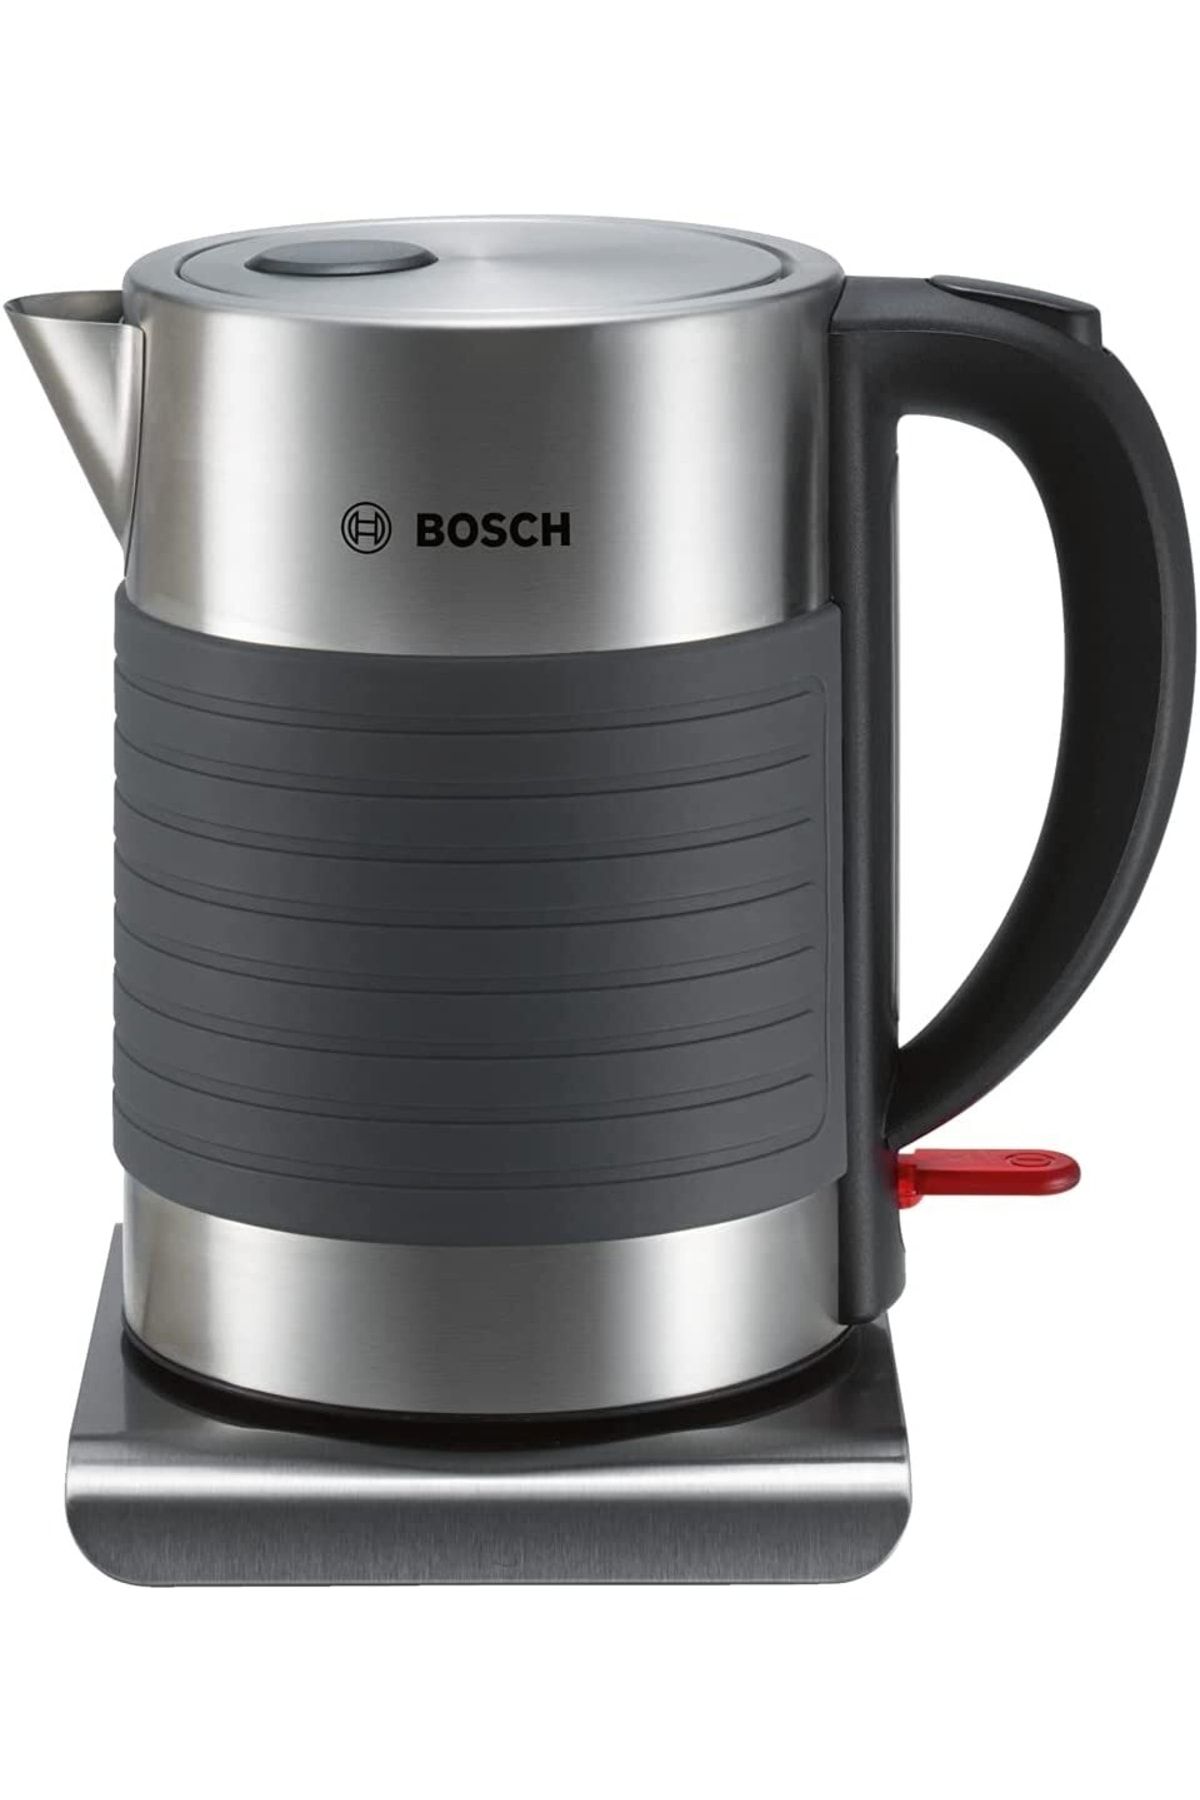 Bosch Twk7s05 Elektrikli Su Isıtıcısı, 2200 W, 7 Fincan, Plastik, Siyah/gri